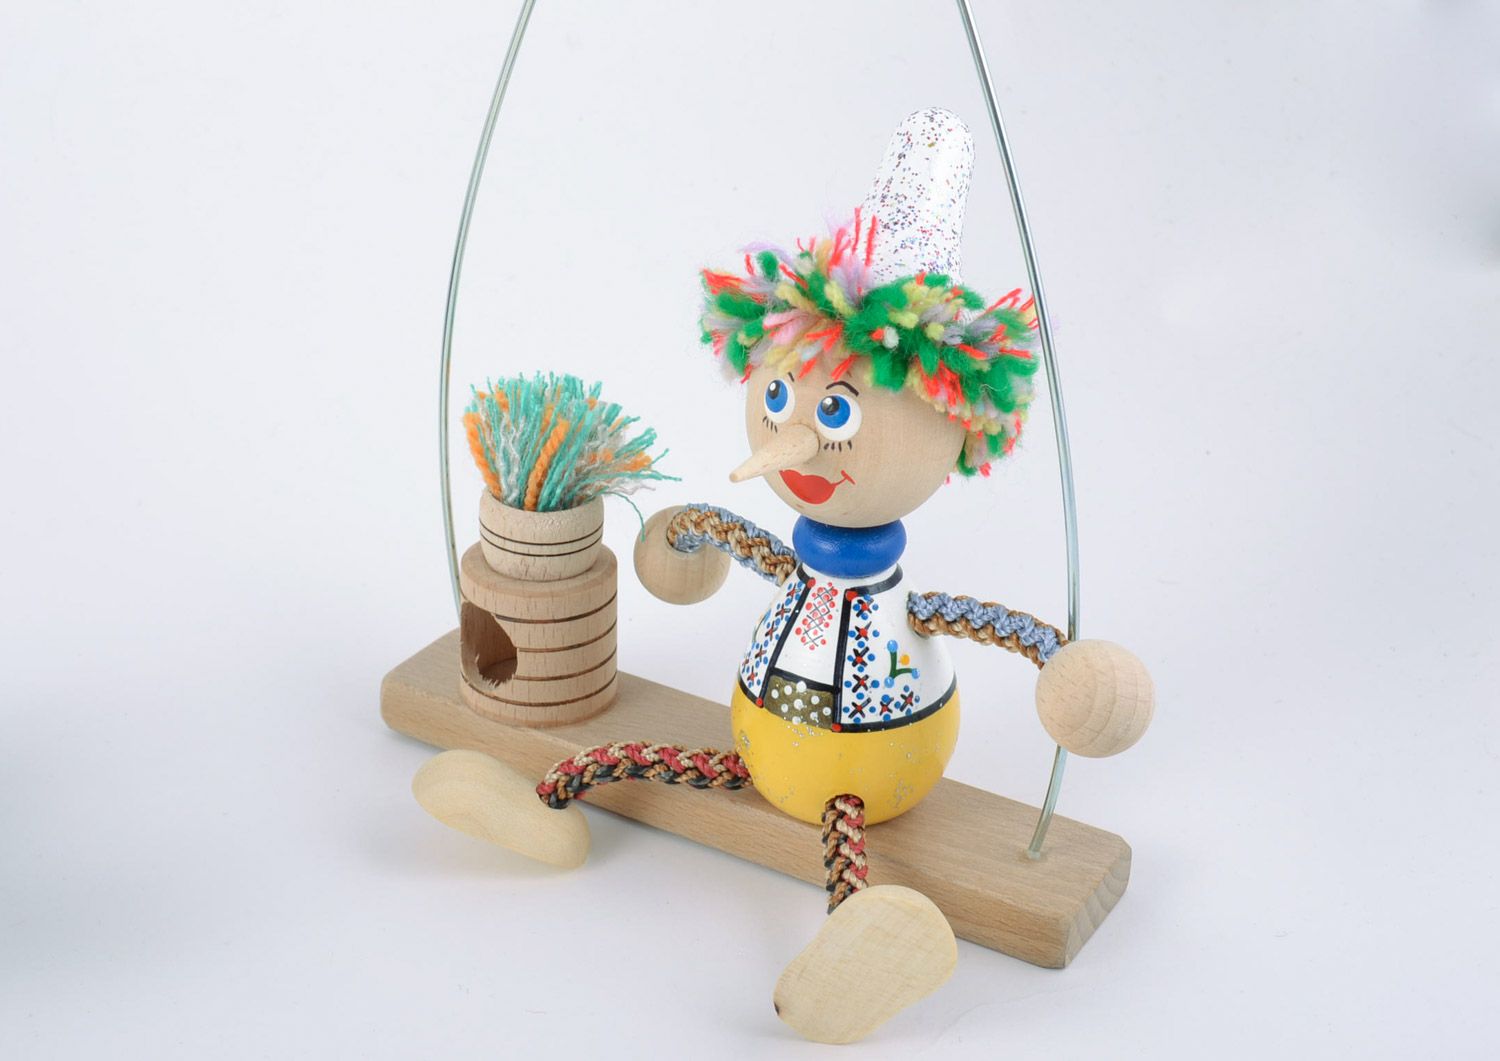 Helles schönes originelles handgemachtes Öko Spielzeug aus Holz Junge auf Bank  foto 4